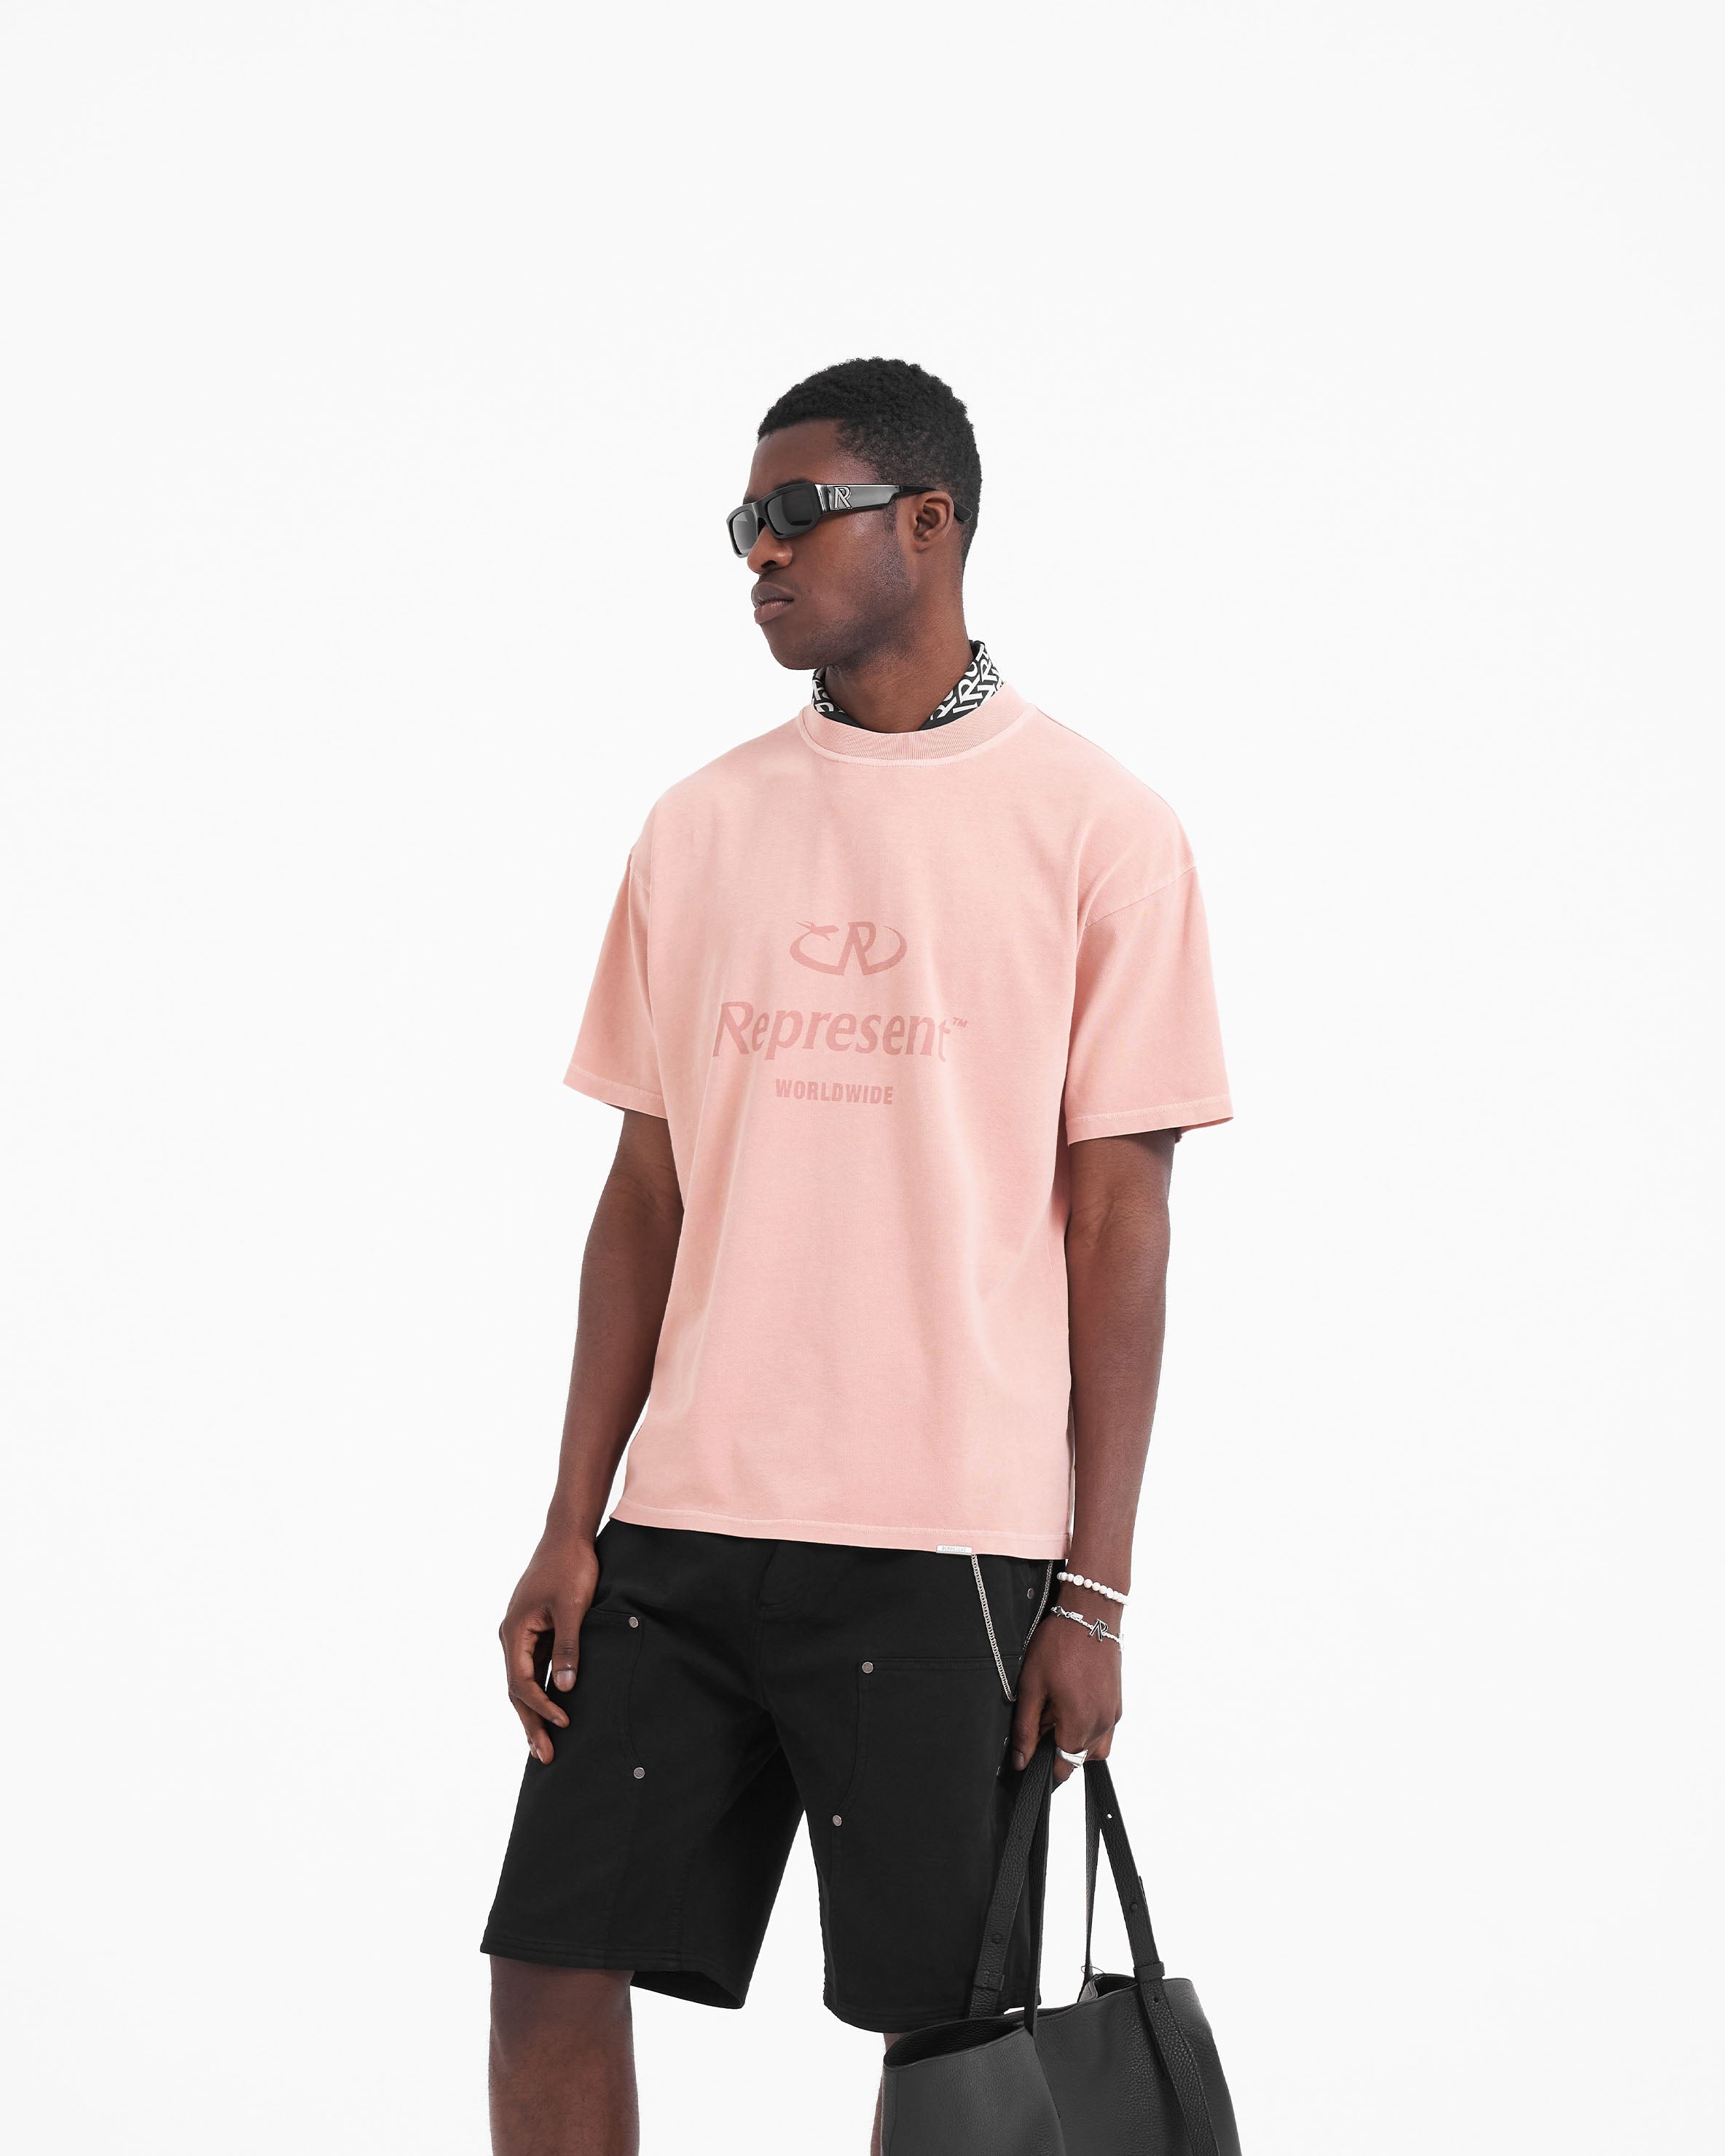 Worldwide T-Shirt - Pink